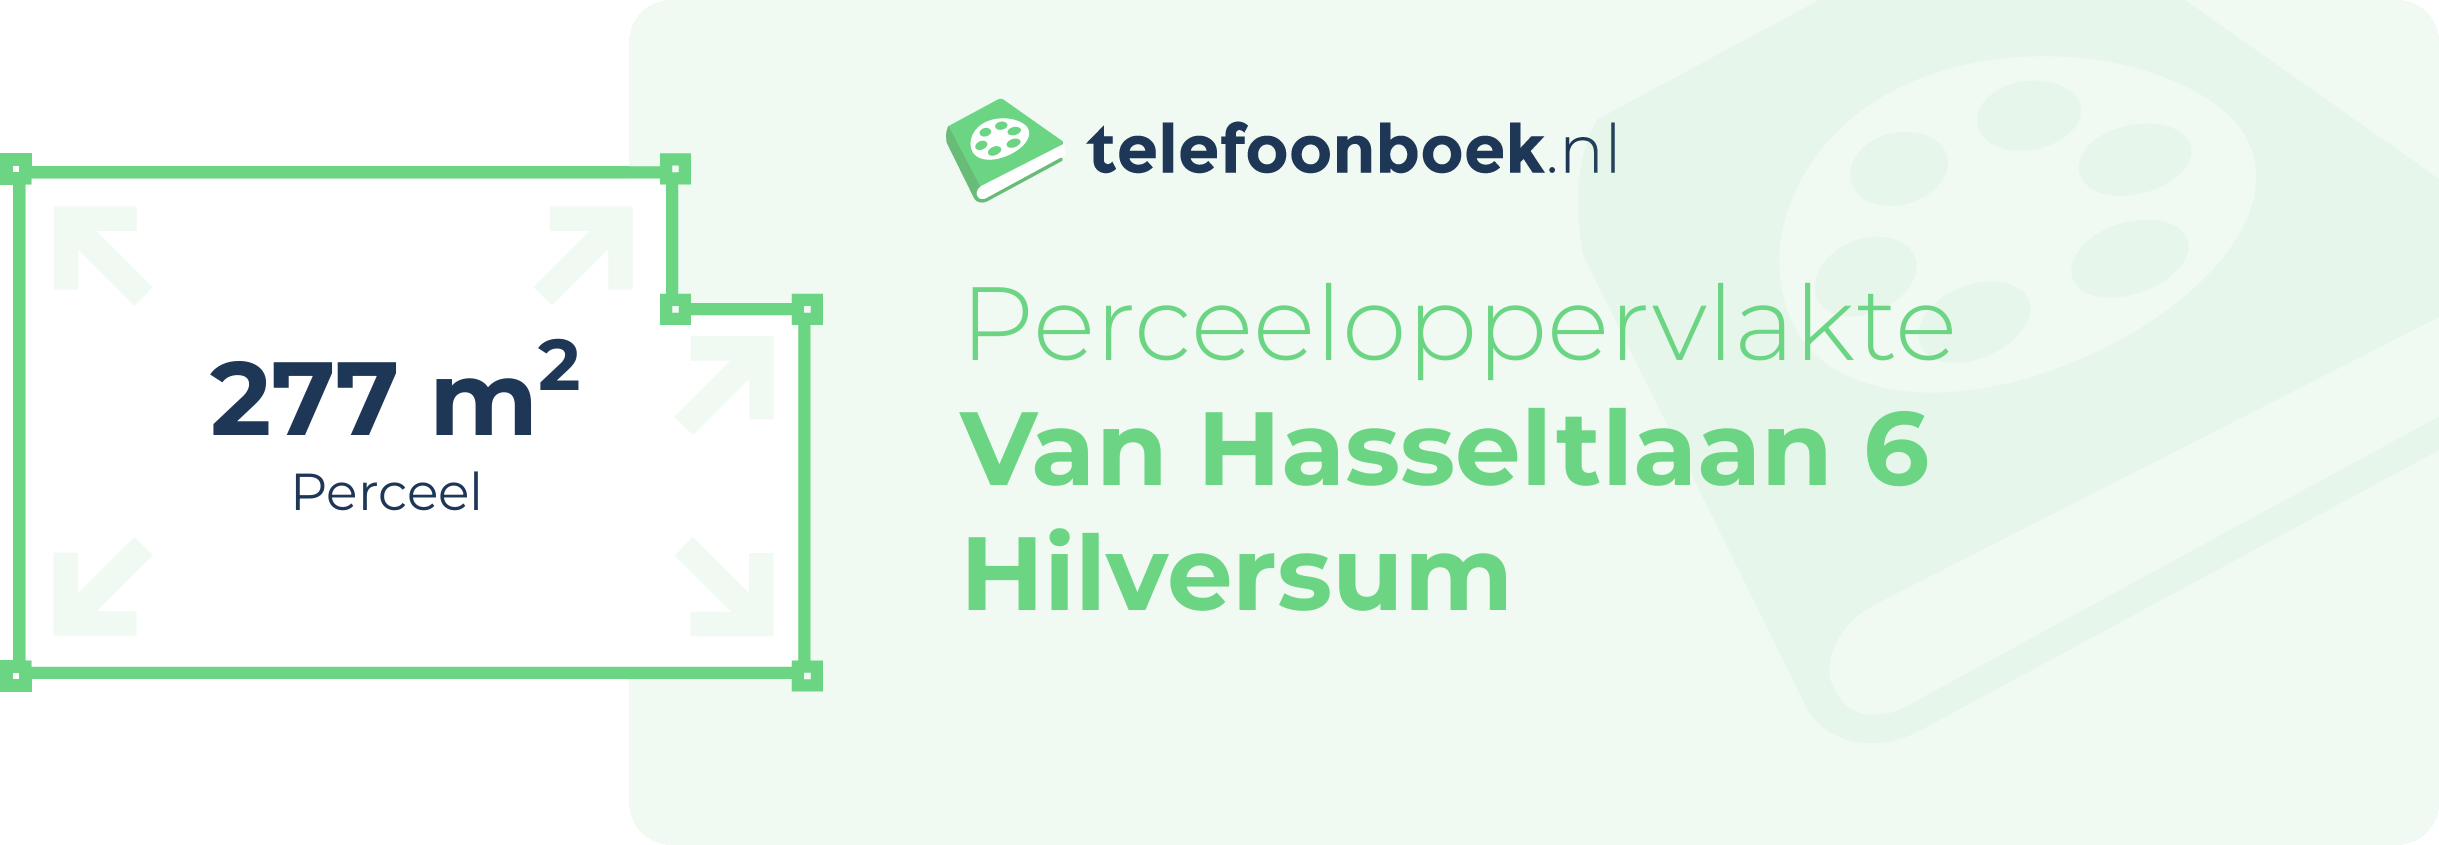 Perceeloppervlakte Van Hasseltlaan 6 Hilversum